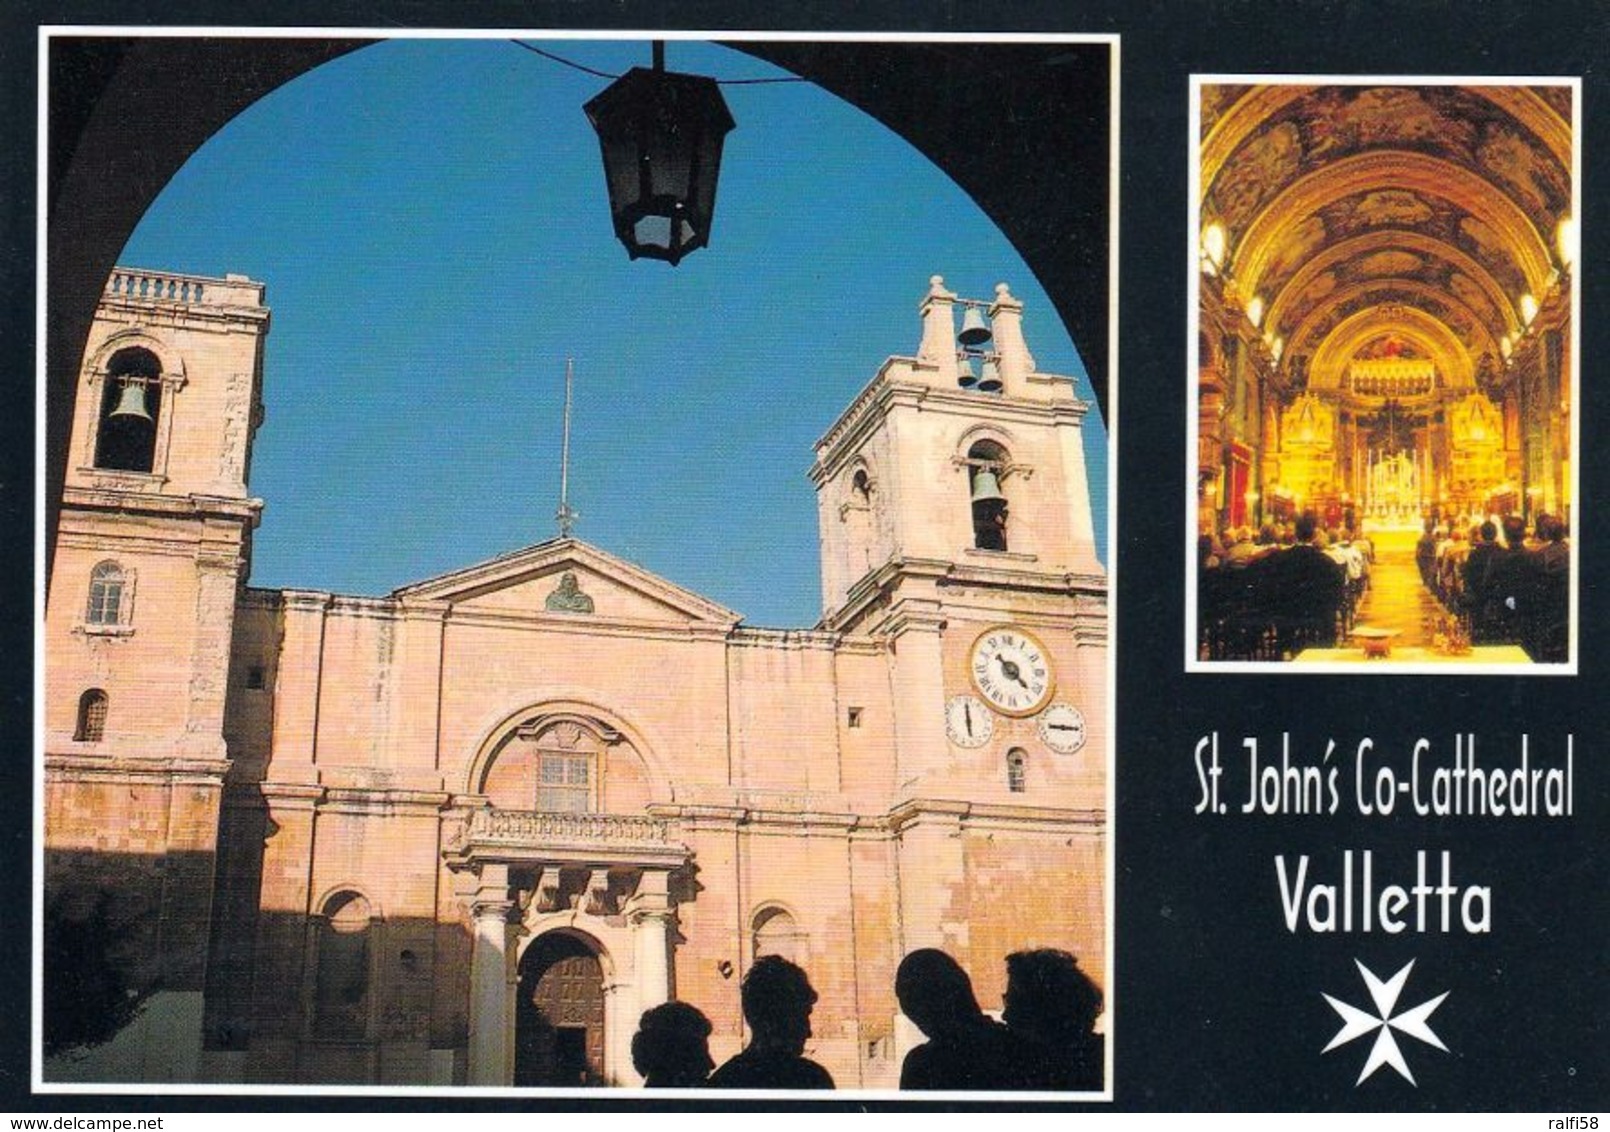 10 AK Malta * 10 Ansichtskarten von Malta mit Sehenswürdigkeiten - siehe Scans *